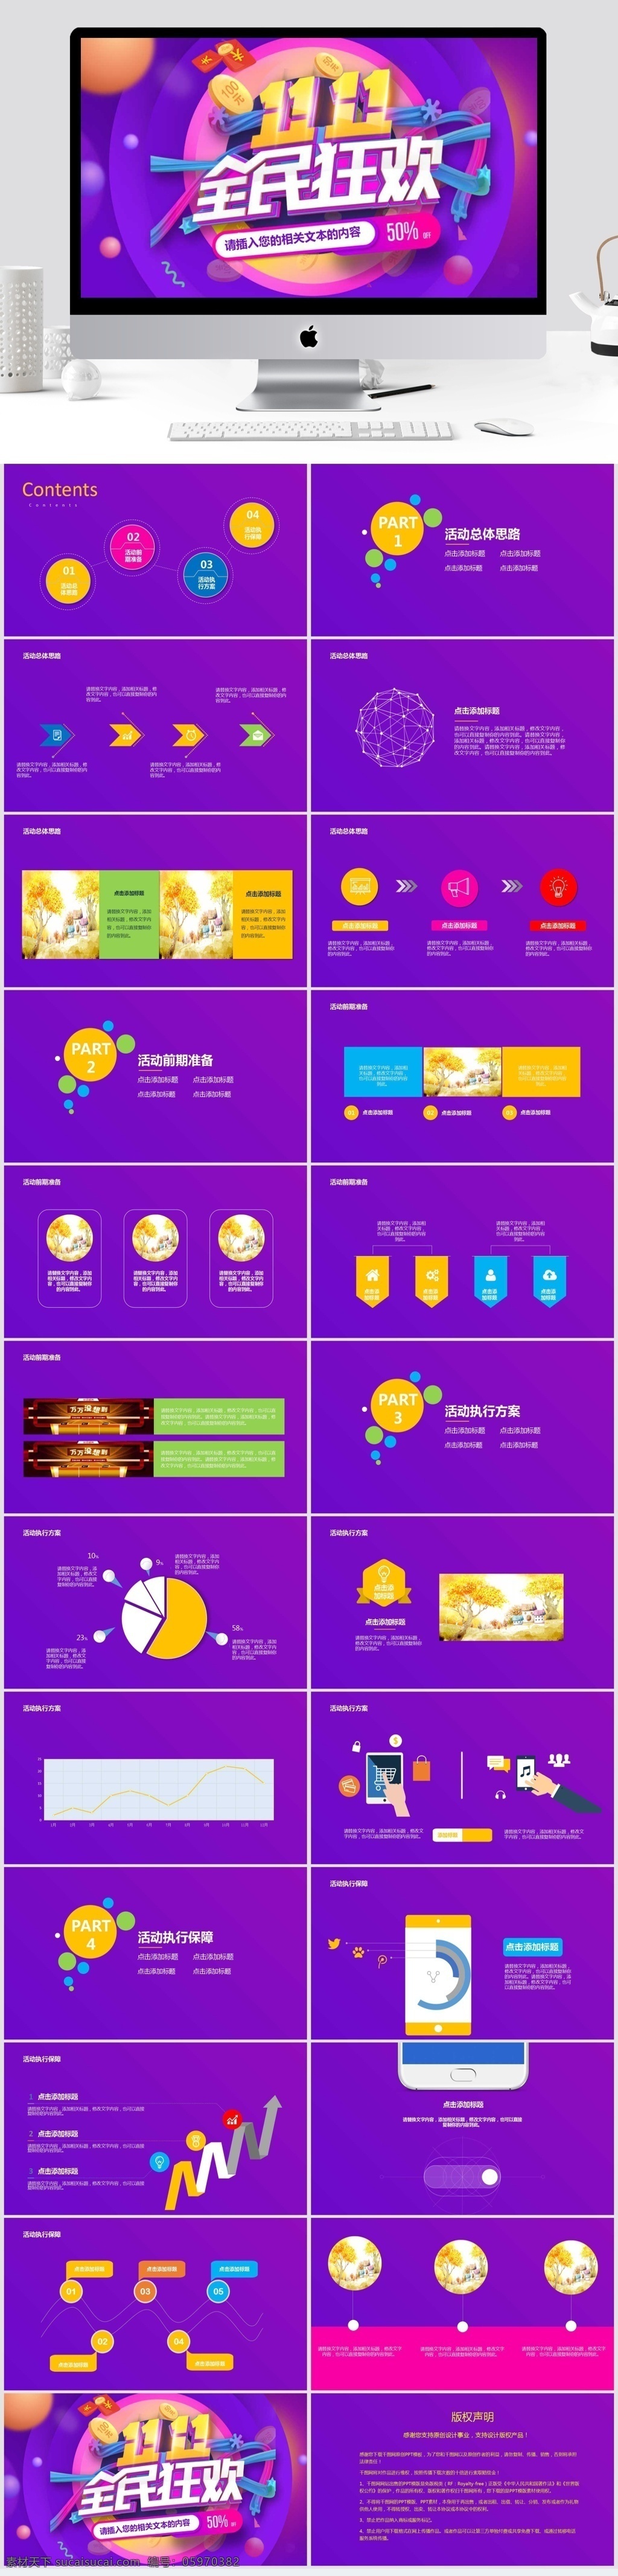 紫色 淘宝 天猫 双十 促销 计划总结 模板 双十一 双十二 双11 双12